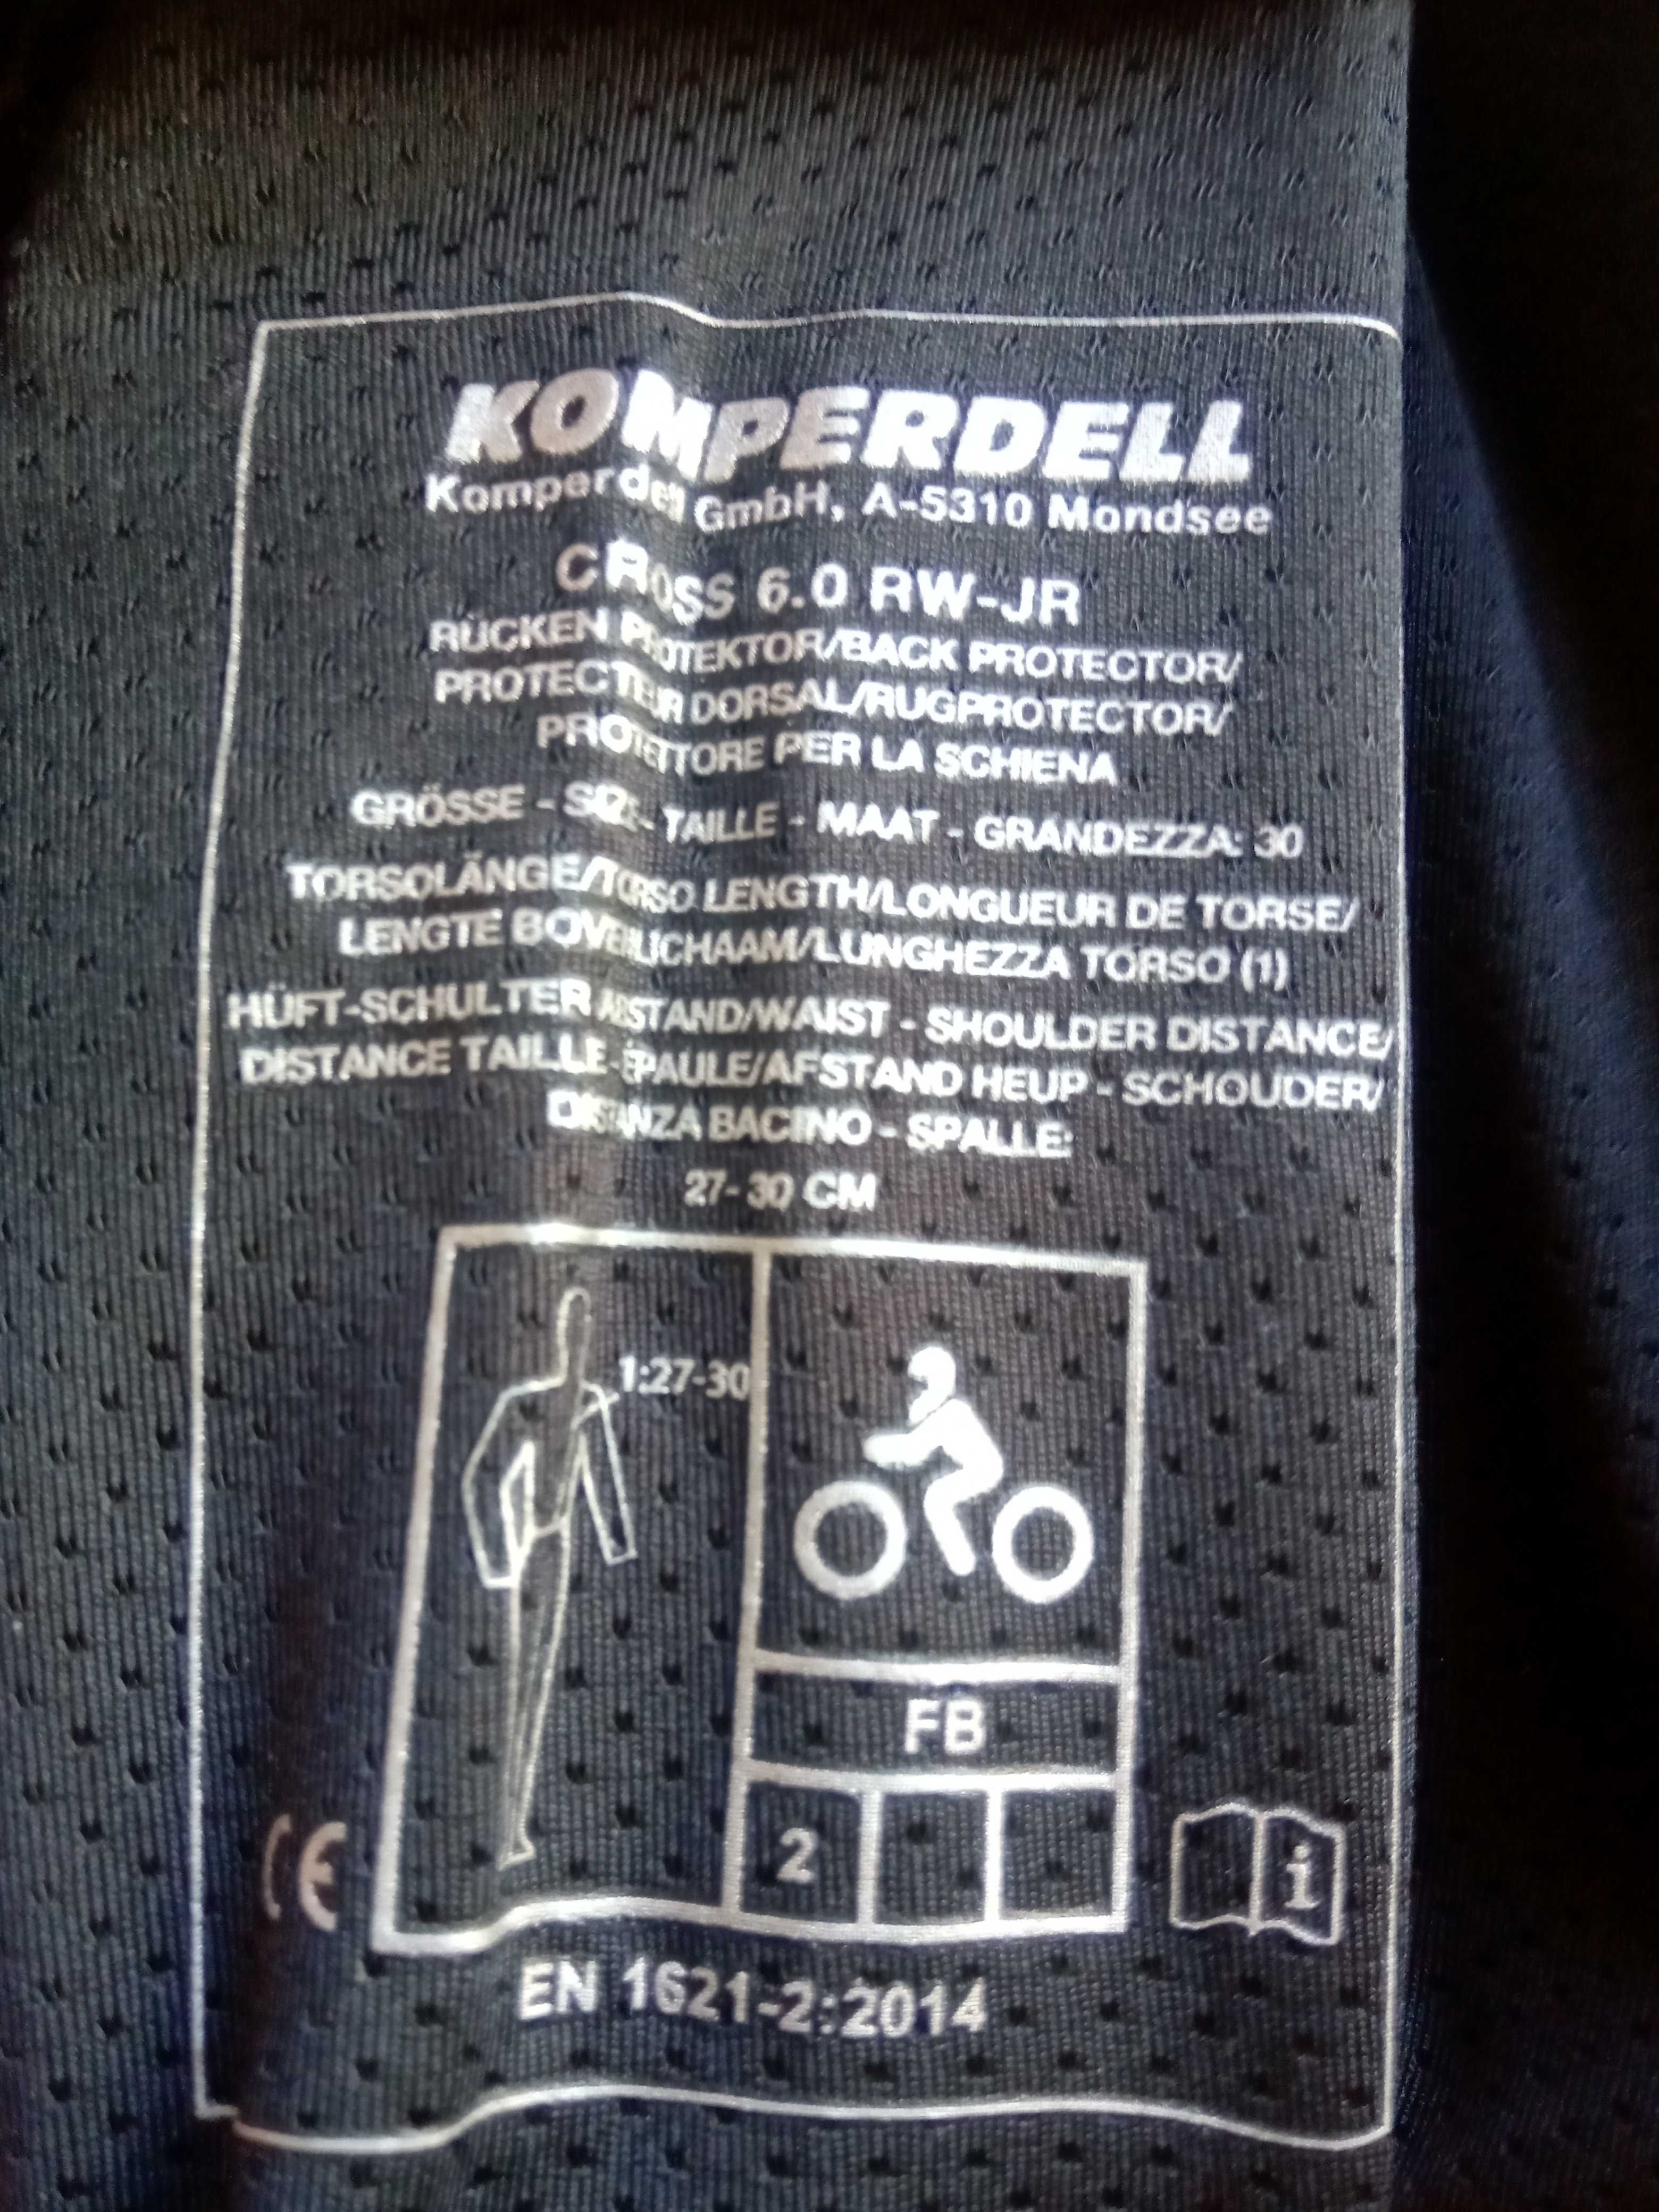 Komperdell защита спины детская для для вело или верховой езды. Новая!